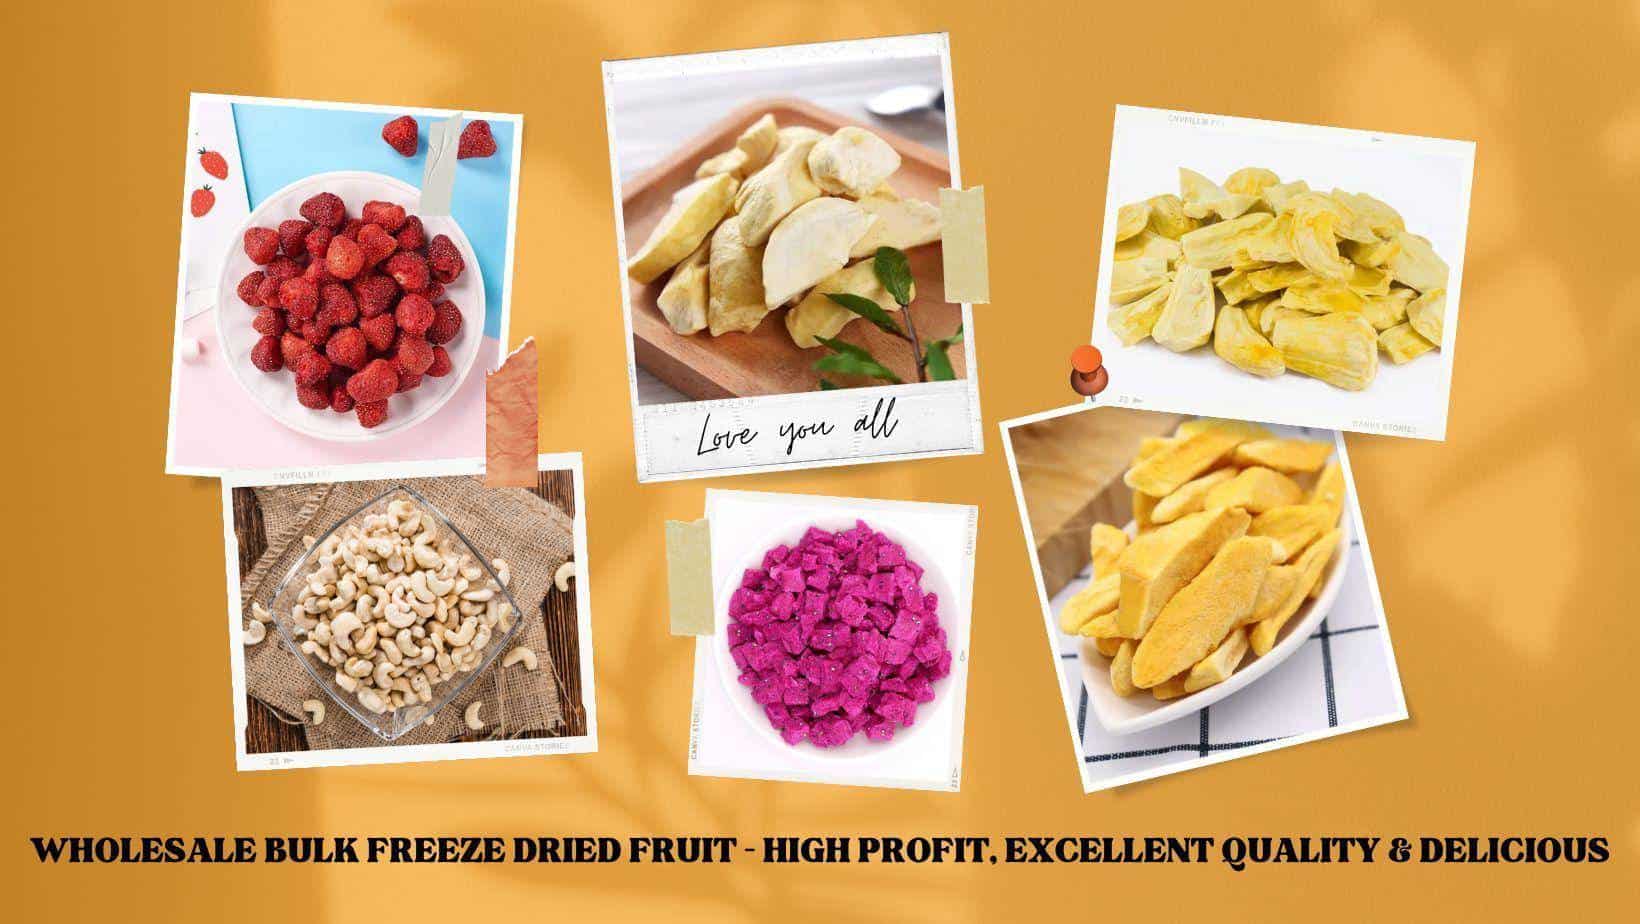 Fruitbuys Vietnam Wholesale Bulk Freeze Dried Fruit High Profit Excellent Quality Delicious 1